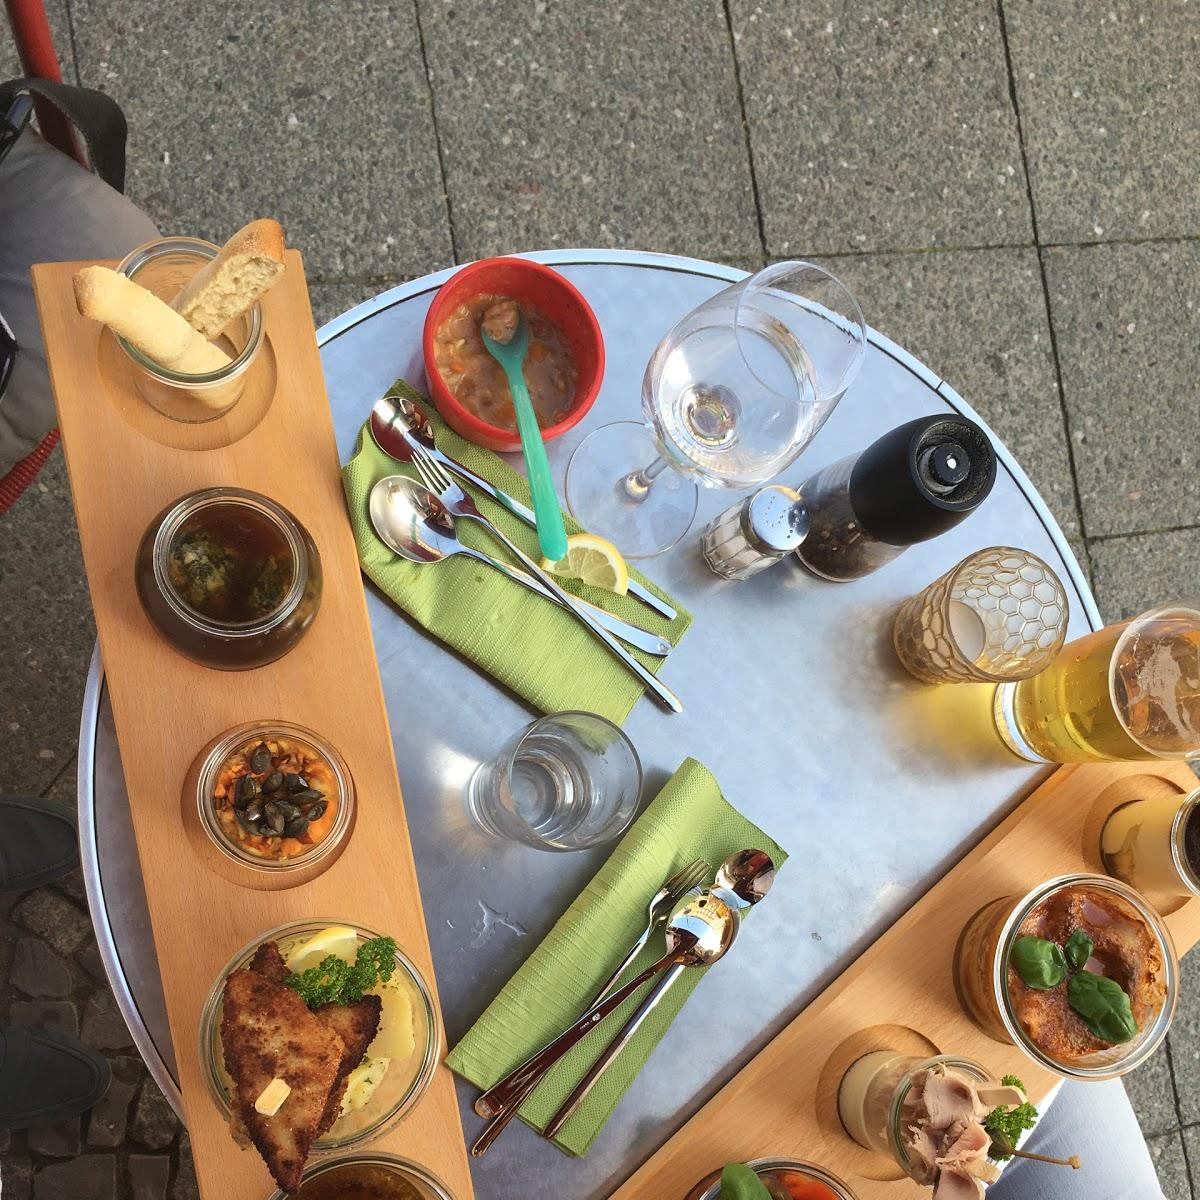 Restaurant "FineFood" in Berlin